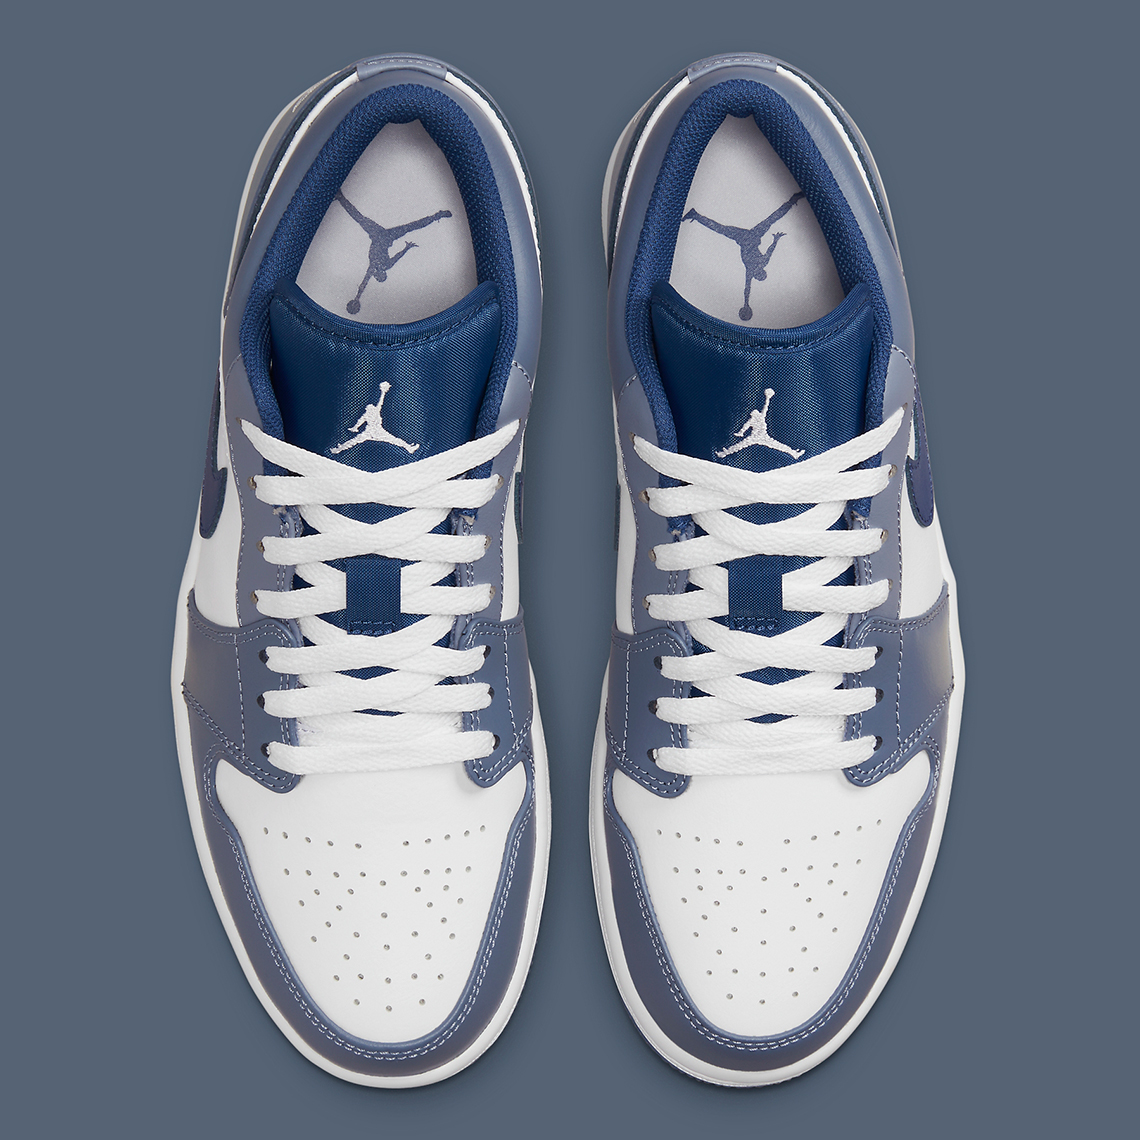 Air Jordan 1 Low 553558-414 Release Info | SneakerNews.com